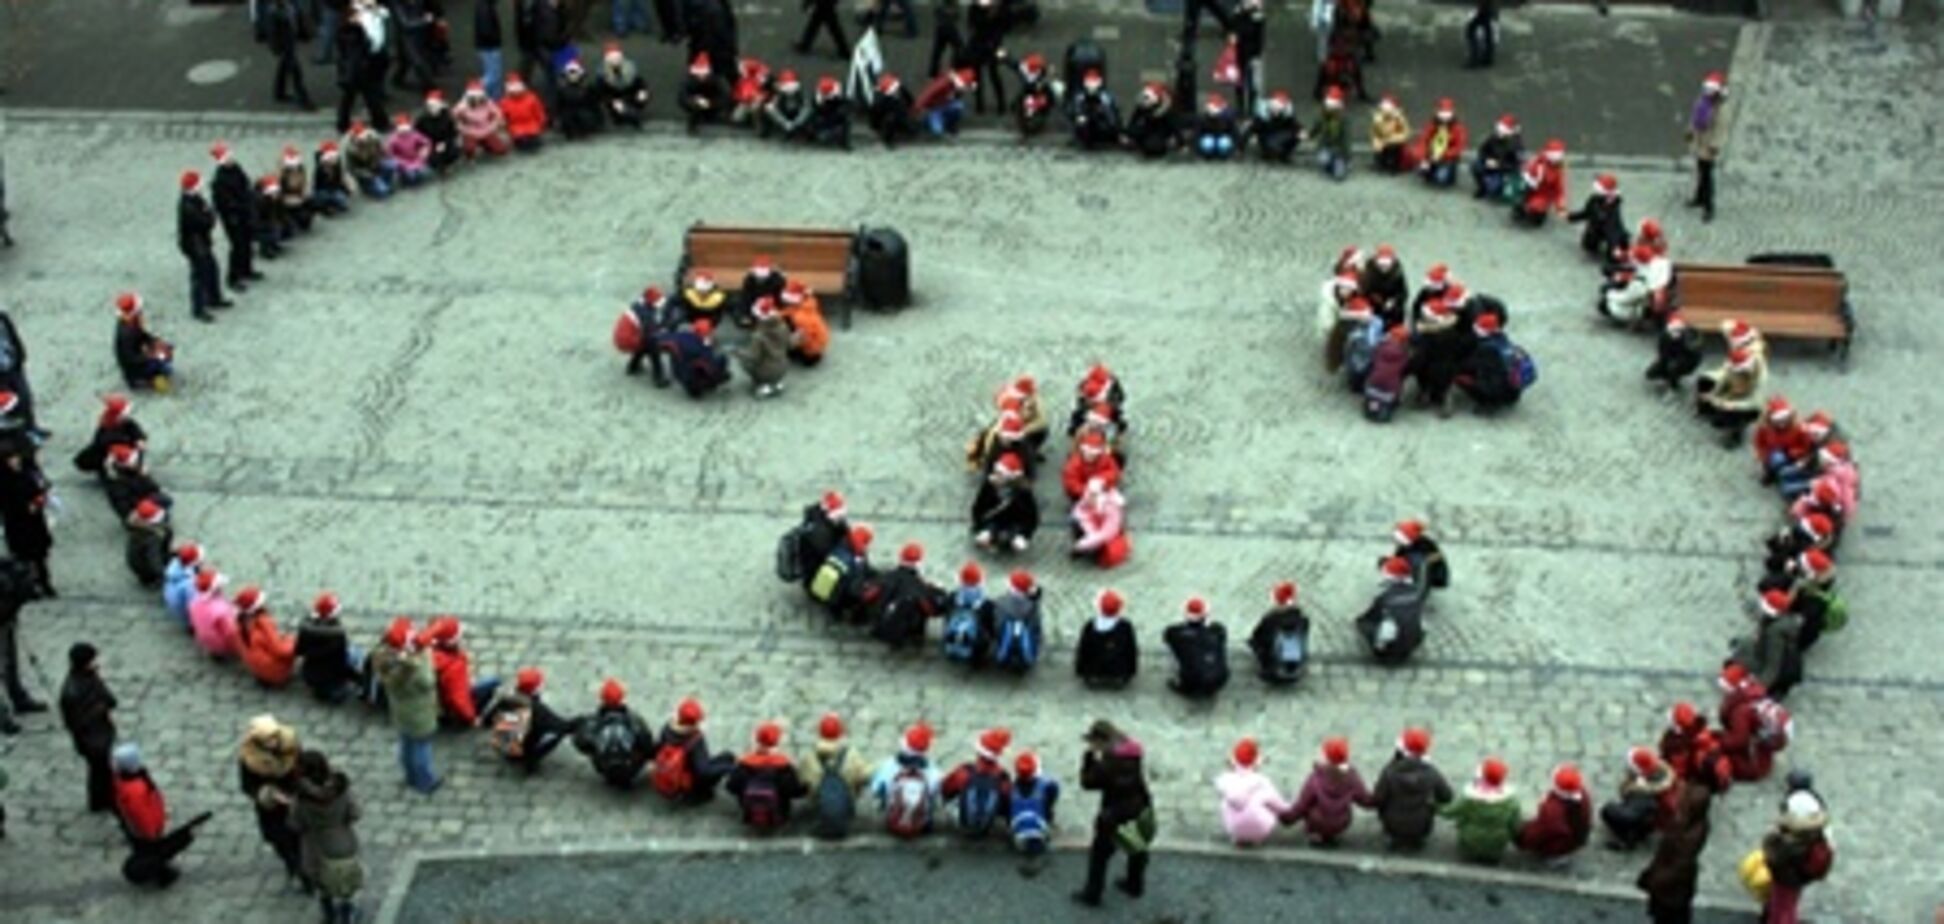 Во Львов съедутся Миколайчики и Санта-Клаусы из более 10 стран мира